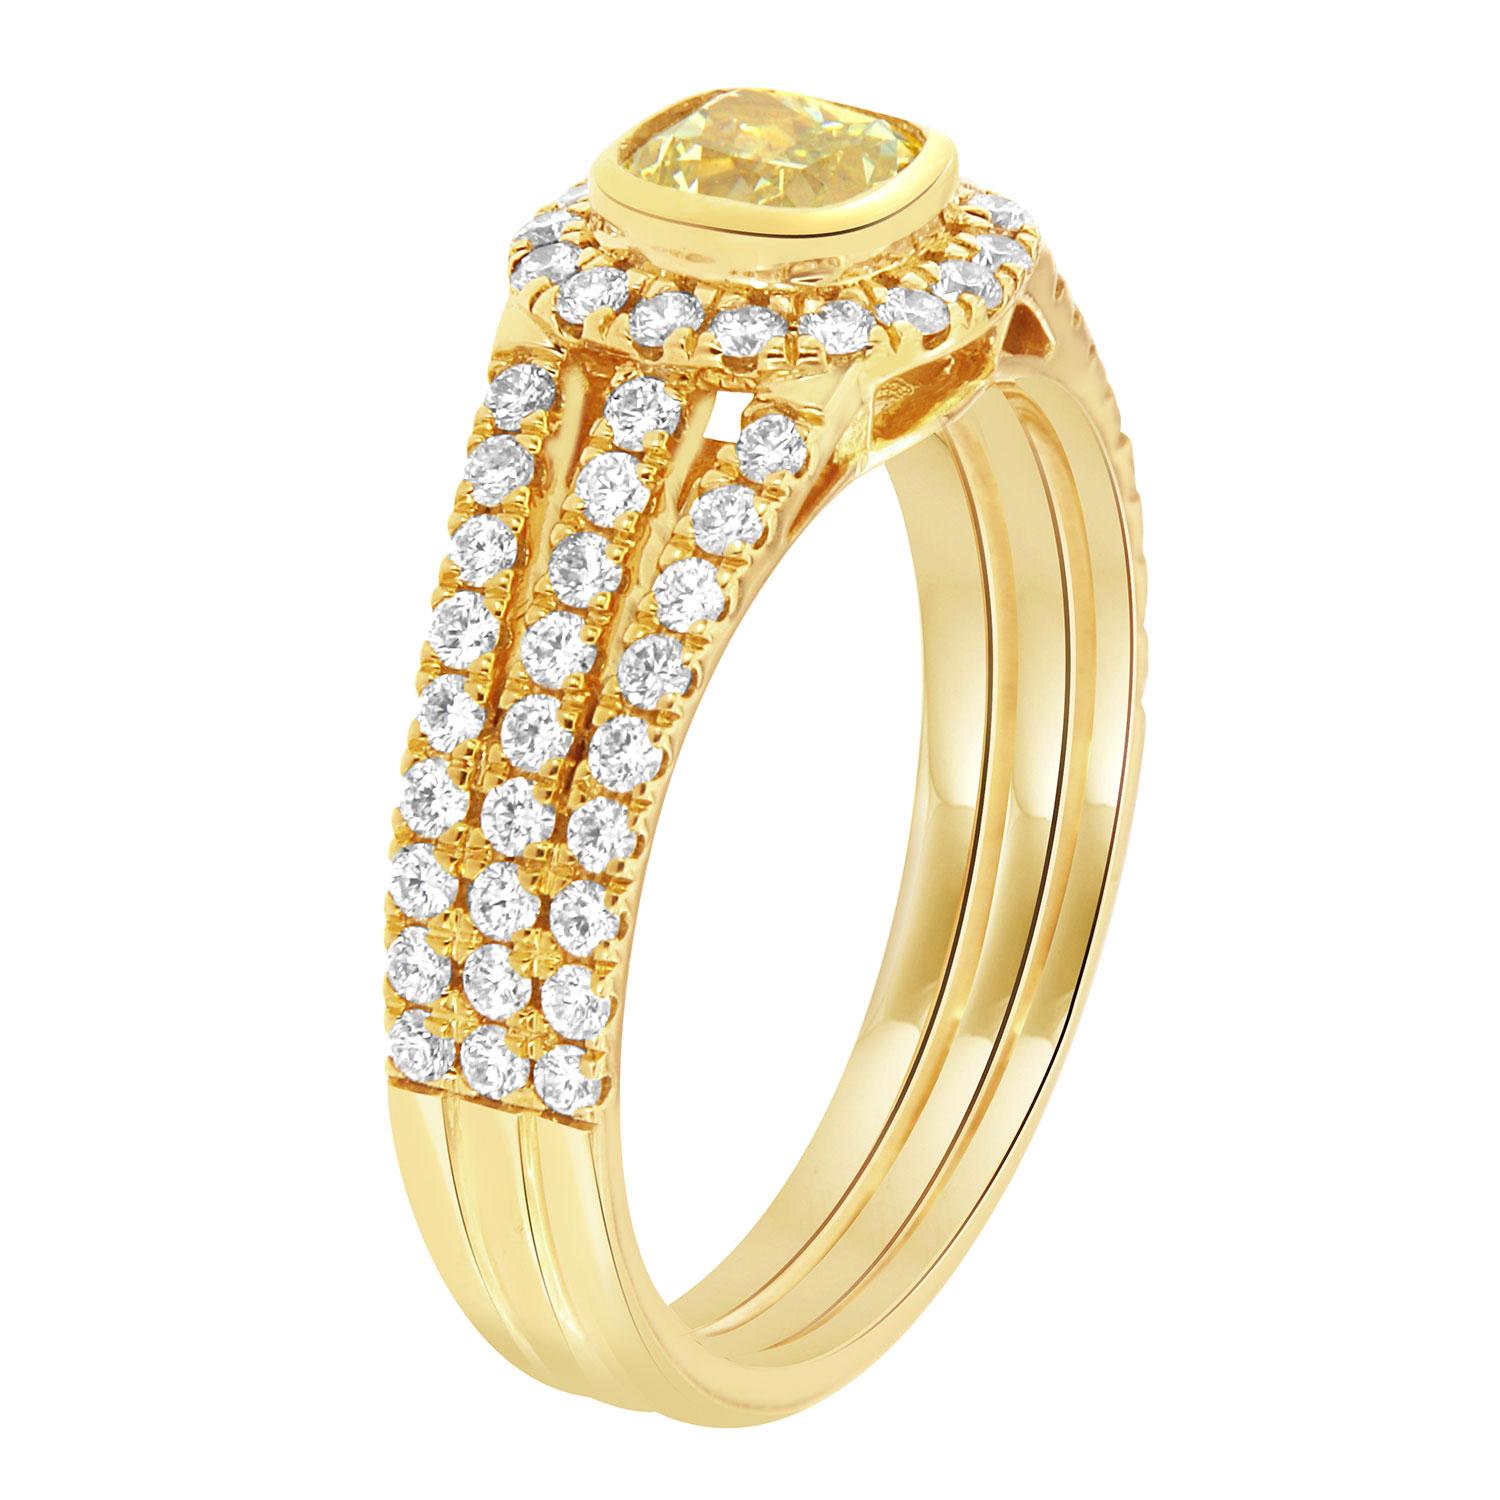 Cette bague délicate présente un diamant jaune naturel de 0,62 carat en forme de coussin carré serti sur une lunette. Un halo de diamants ronds et brillants entoure le diamant jaune. Trois fines rangées de diamants ronds et brillants, sertis en